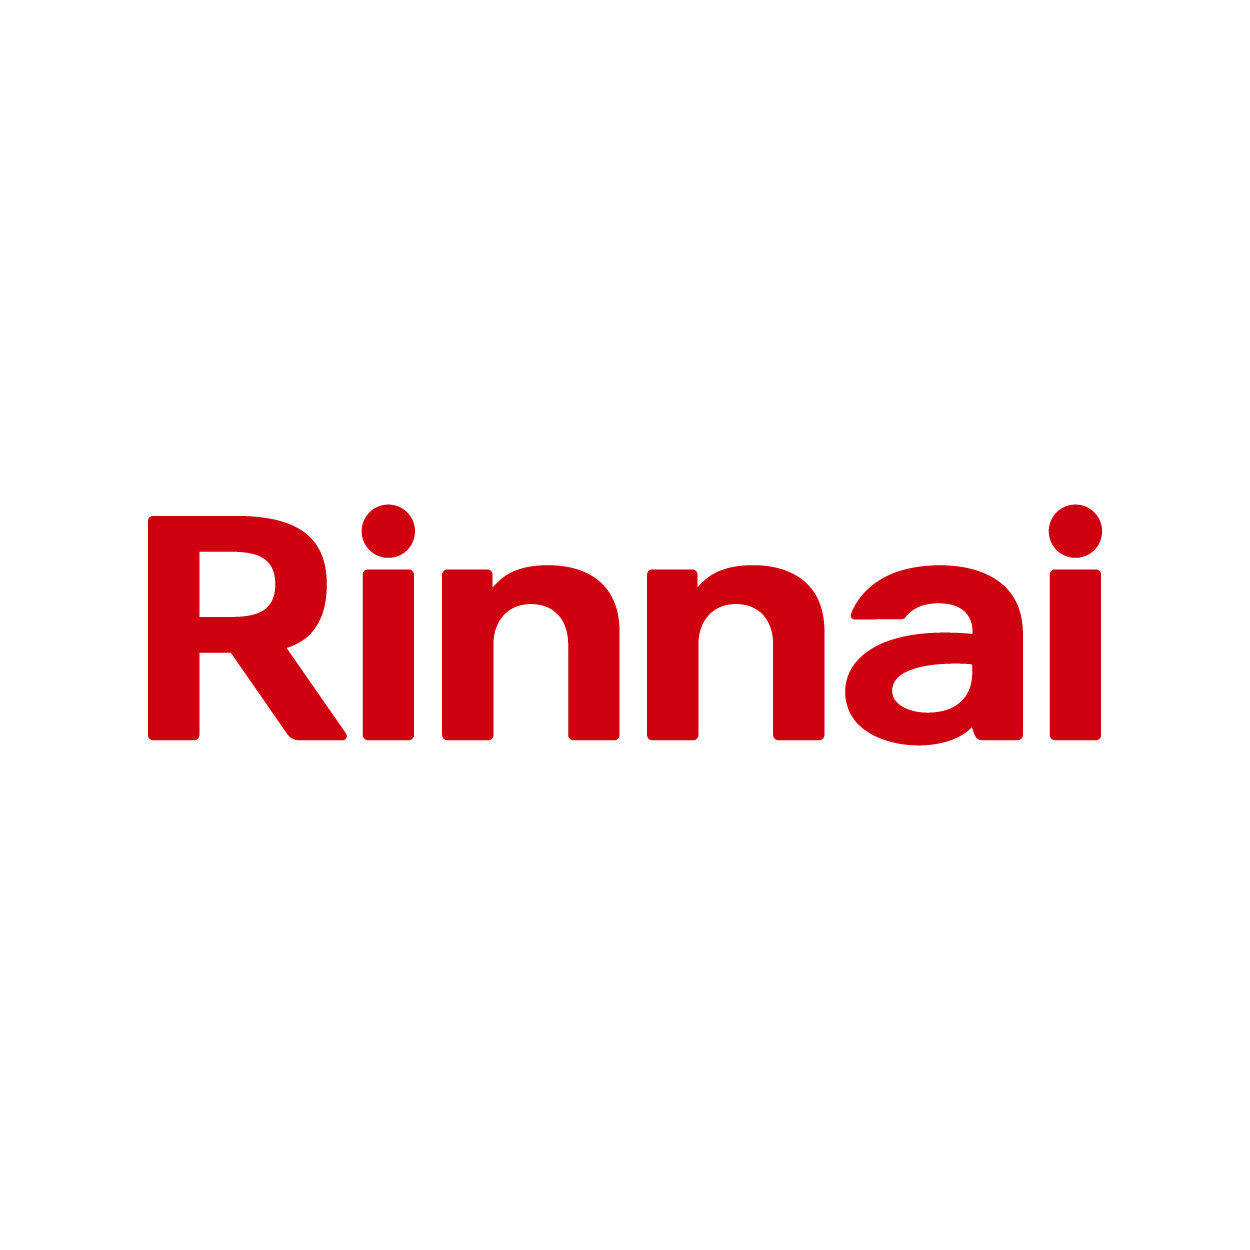 Rinnai Official